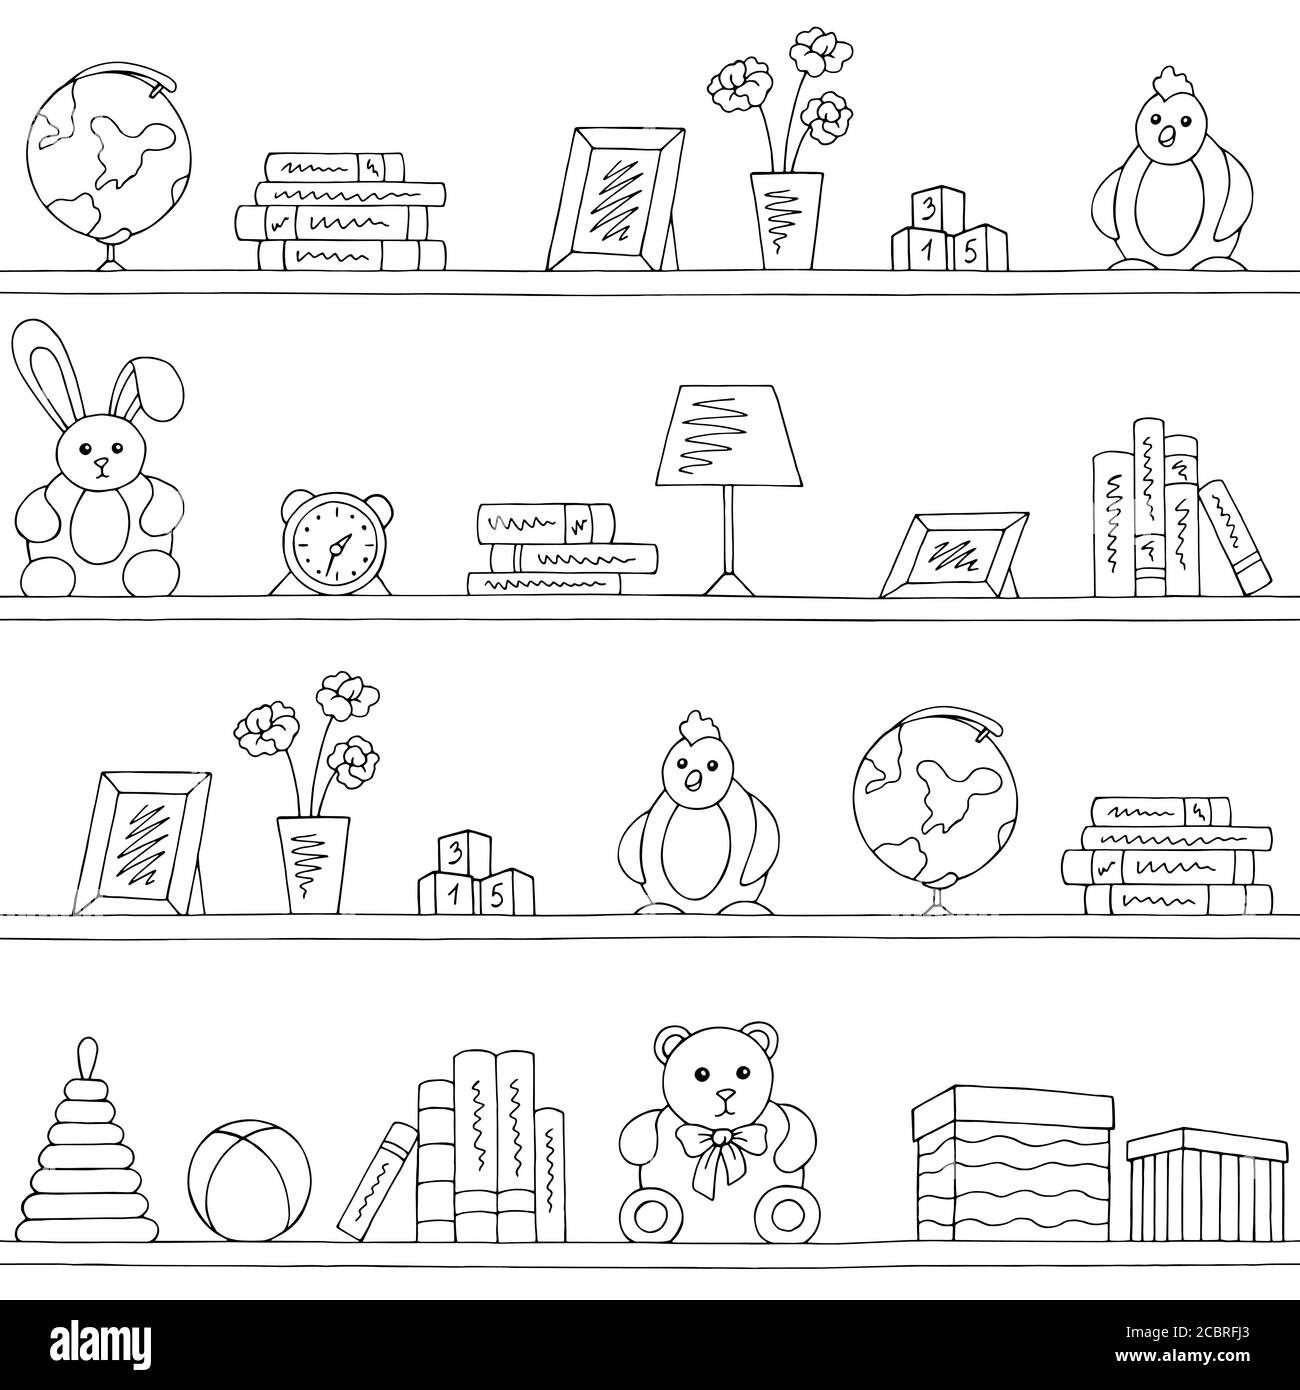 Regale Grafik schwarz weiß Kinder Zimmer Spielzeug Buch nahtlose Muster Vektor der Hintergrundskizze Stock Vektor